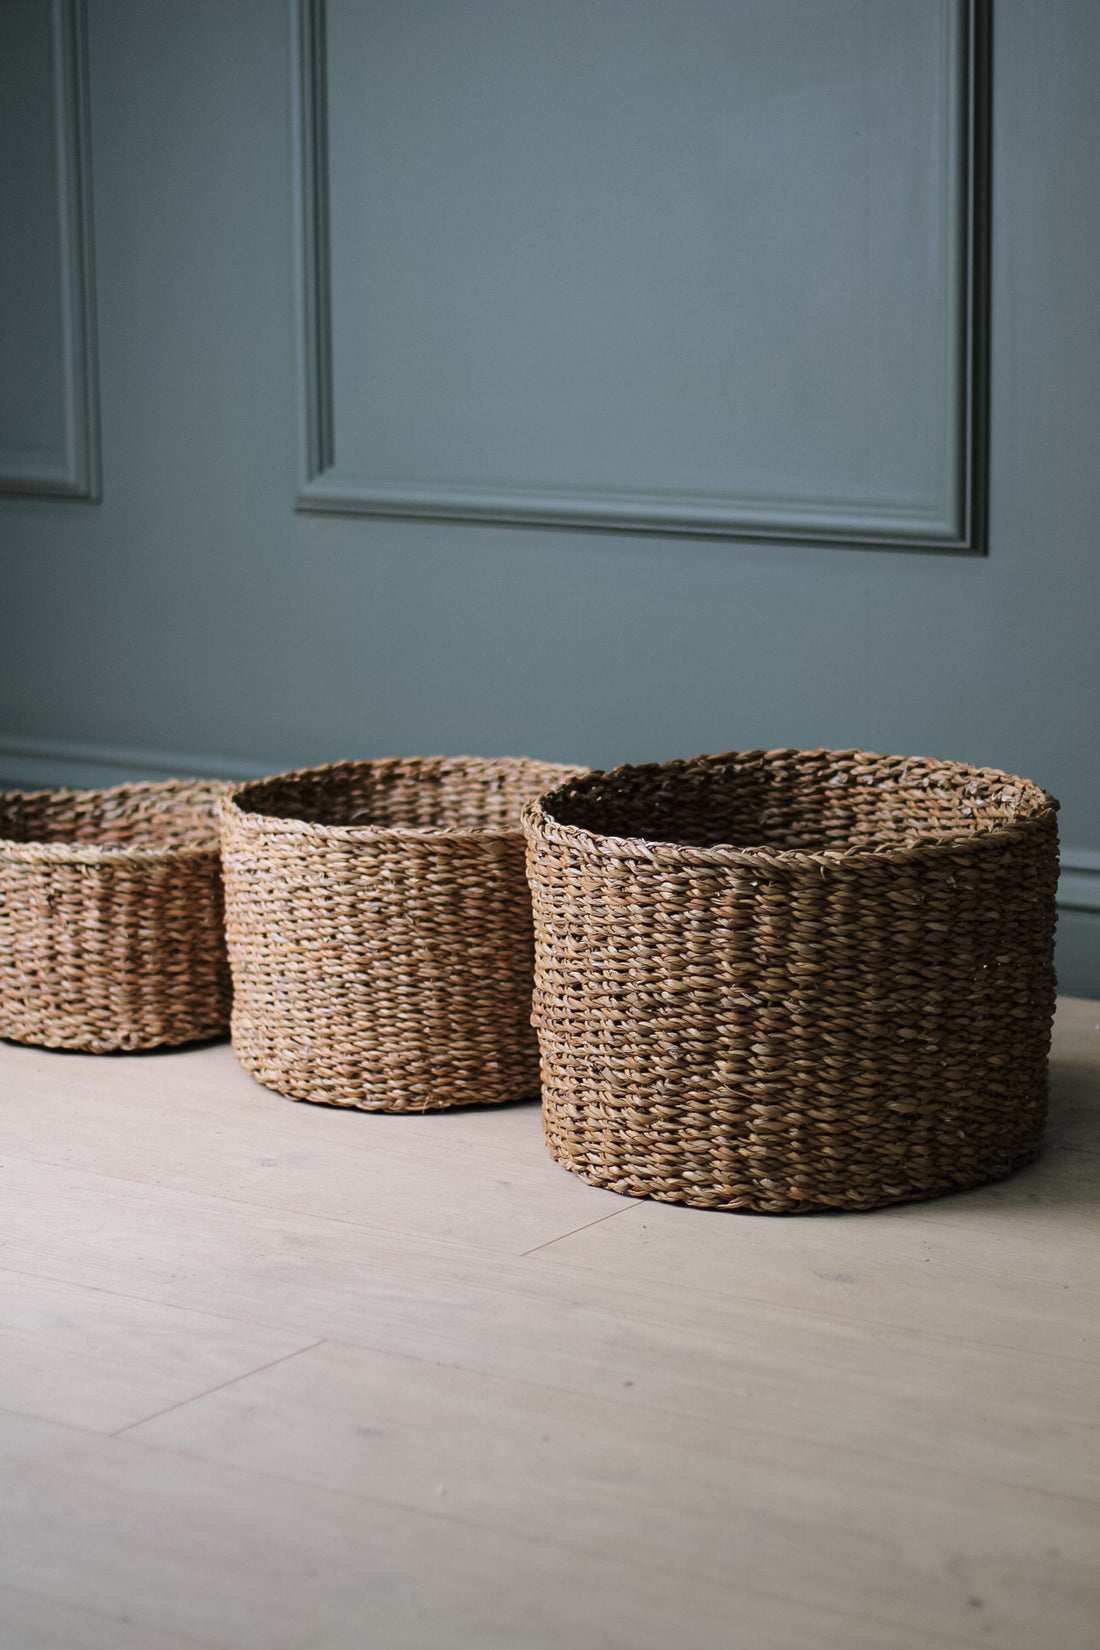 Belford Round Braided Seagrass Storage Baskets | Set of 3